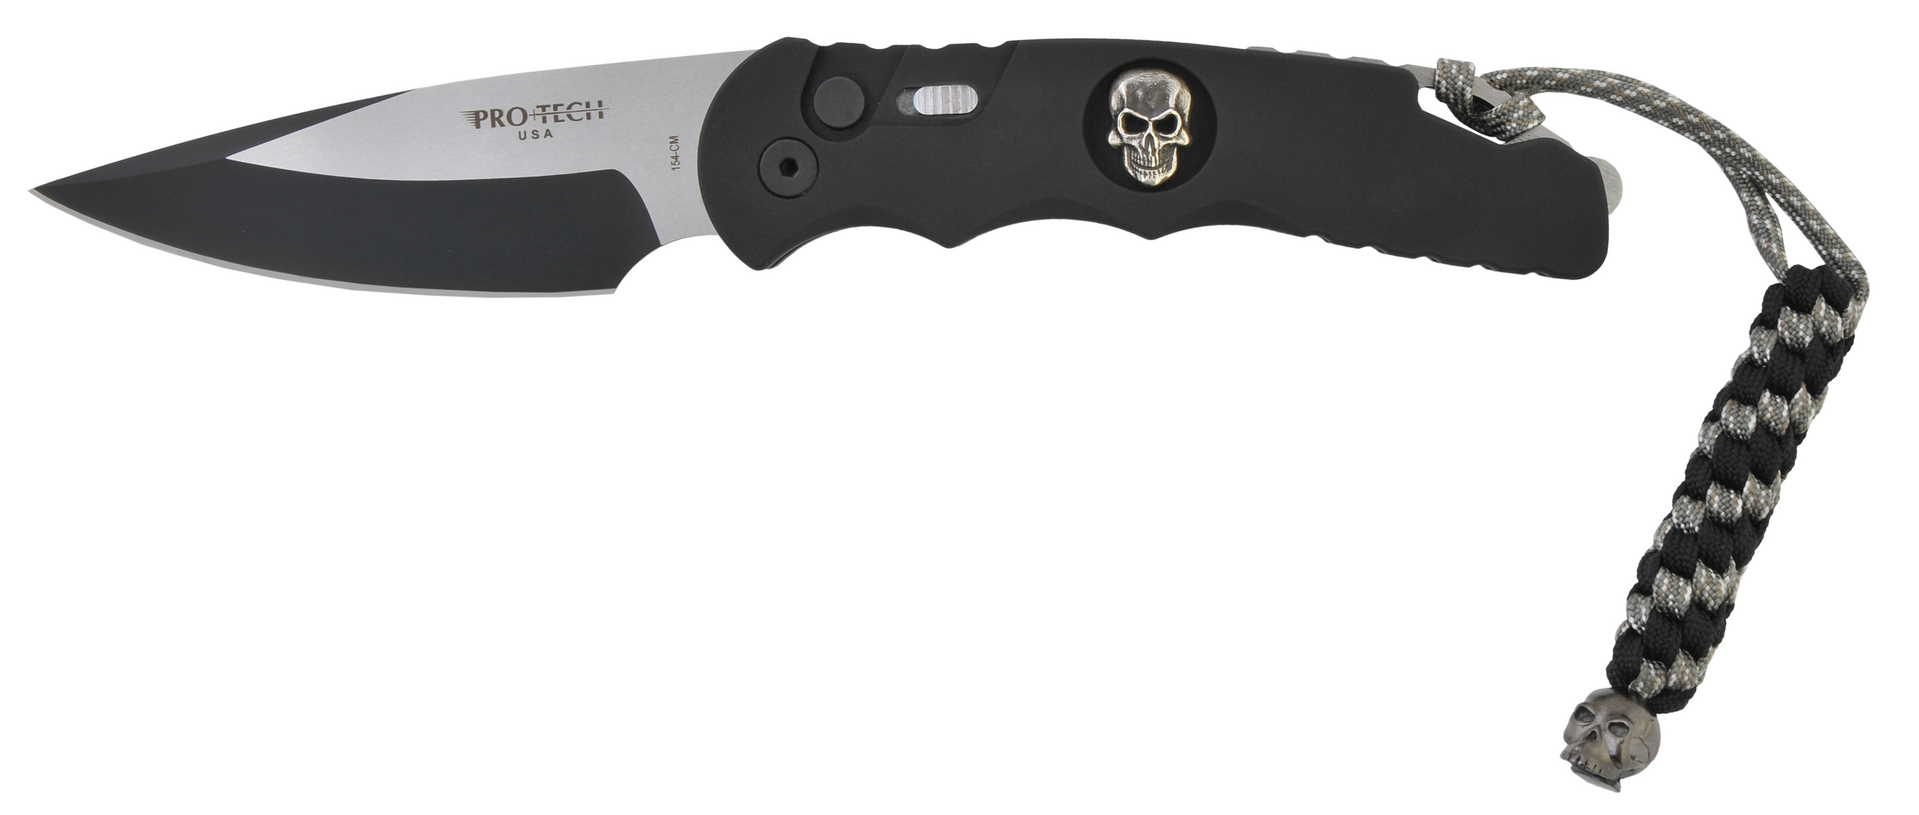 Нож Pro-Tech Doru Skull Limited складной сталь 154CM алюмини